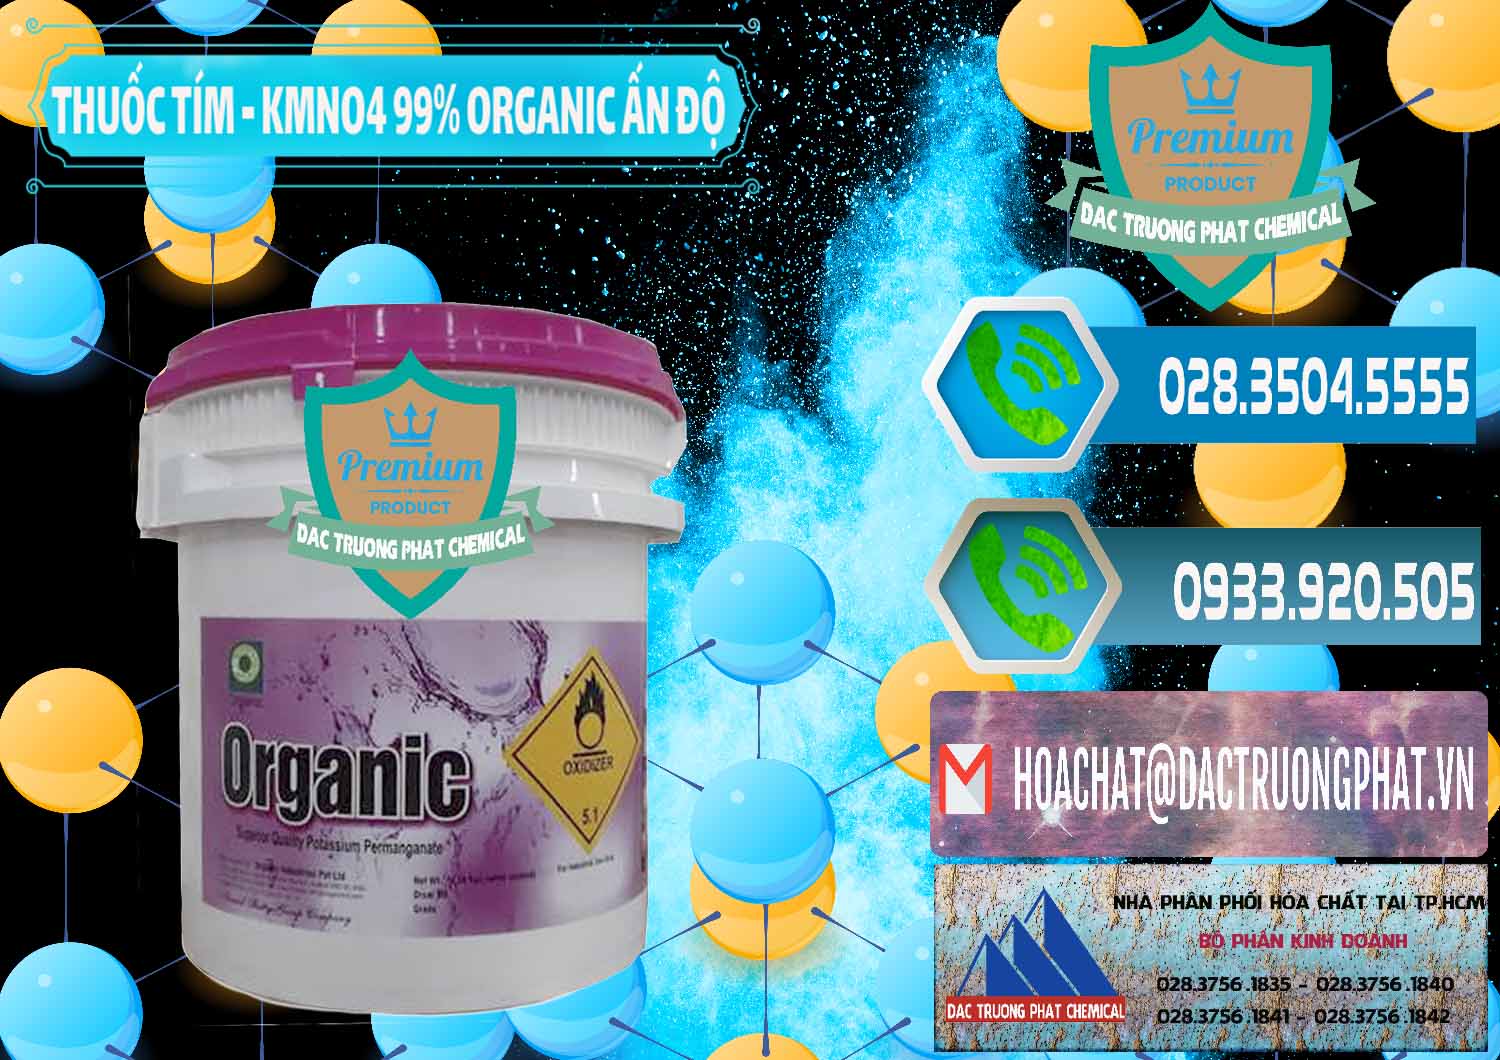 Đơn vị chuyên kinh doanh - bán Thuốc Tím - KMNO4 99% Organic Ấn Độ India - 0216 - Chuyên kinh doanh và phân phối hóa chất tại TP.HCM - congtyhoachat.net